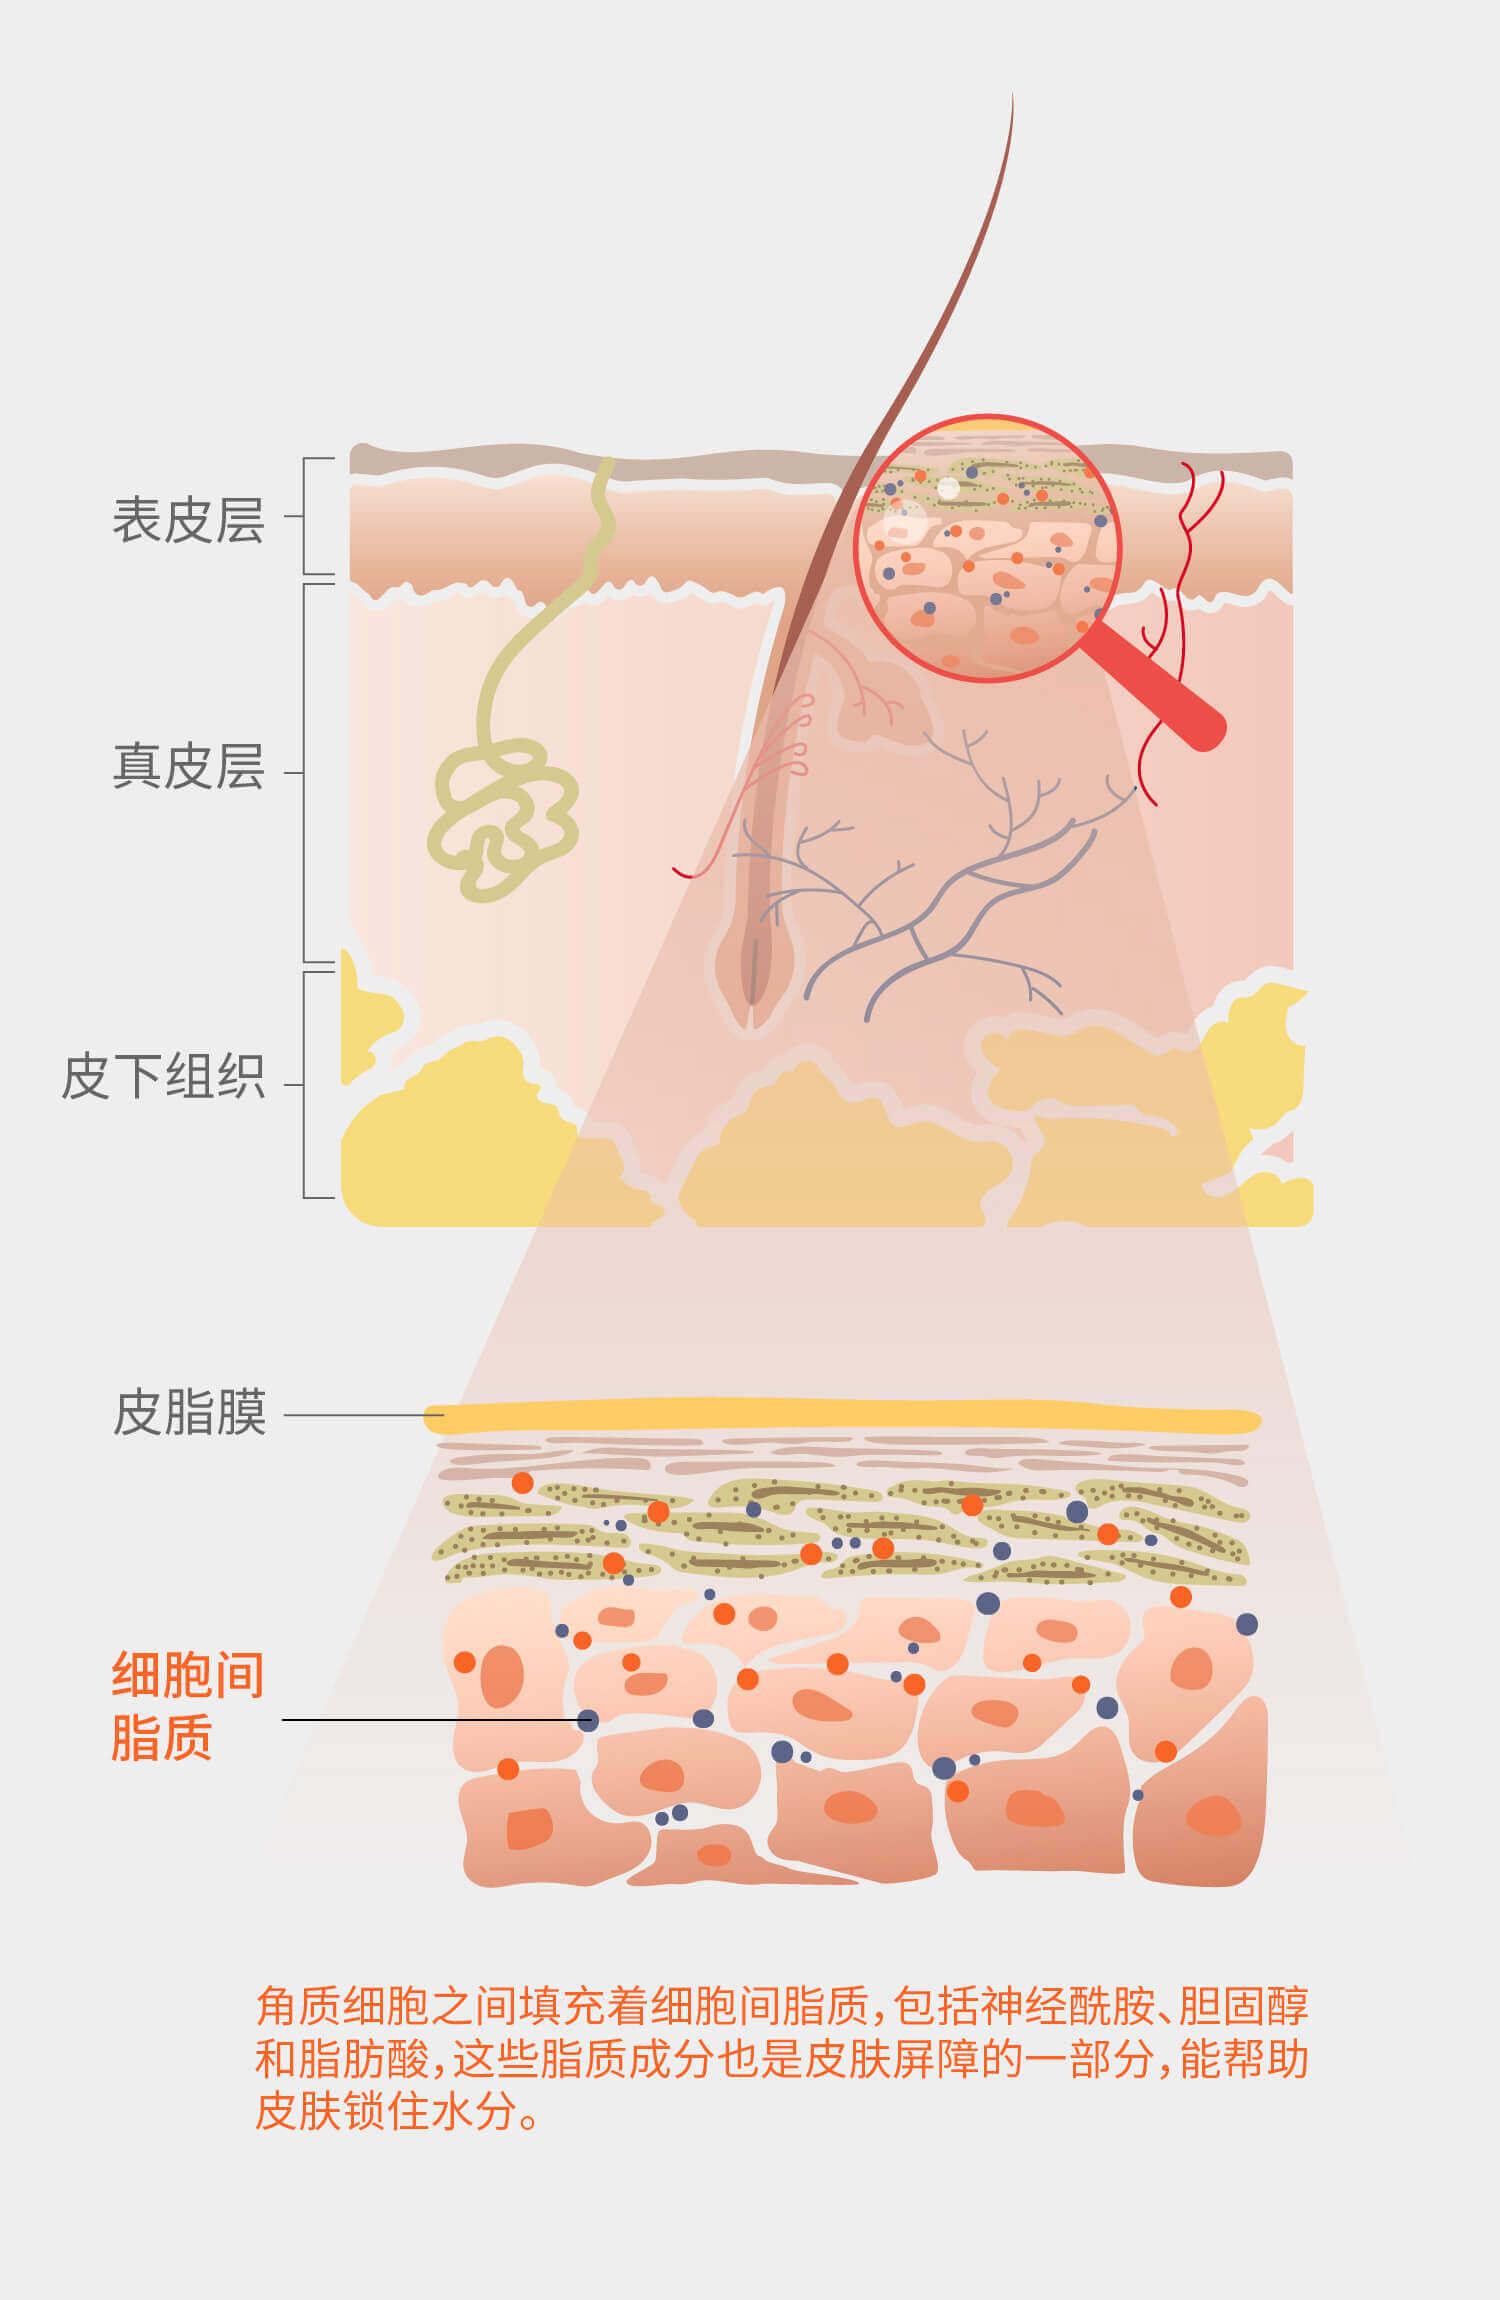 又称为水脂膜,主要由皮肤皮脂腺分泌的皮脂,角质层细胞崩解产生的脂质